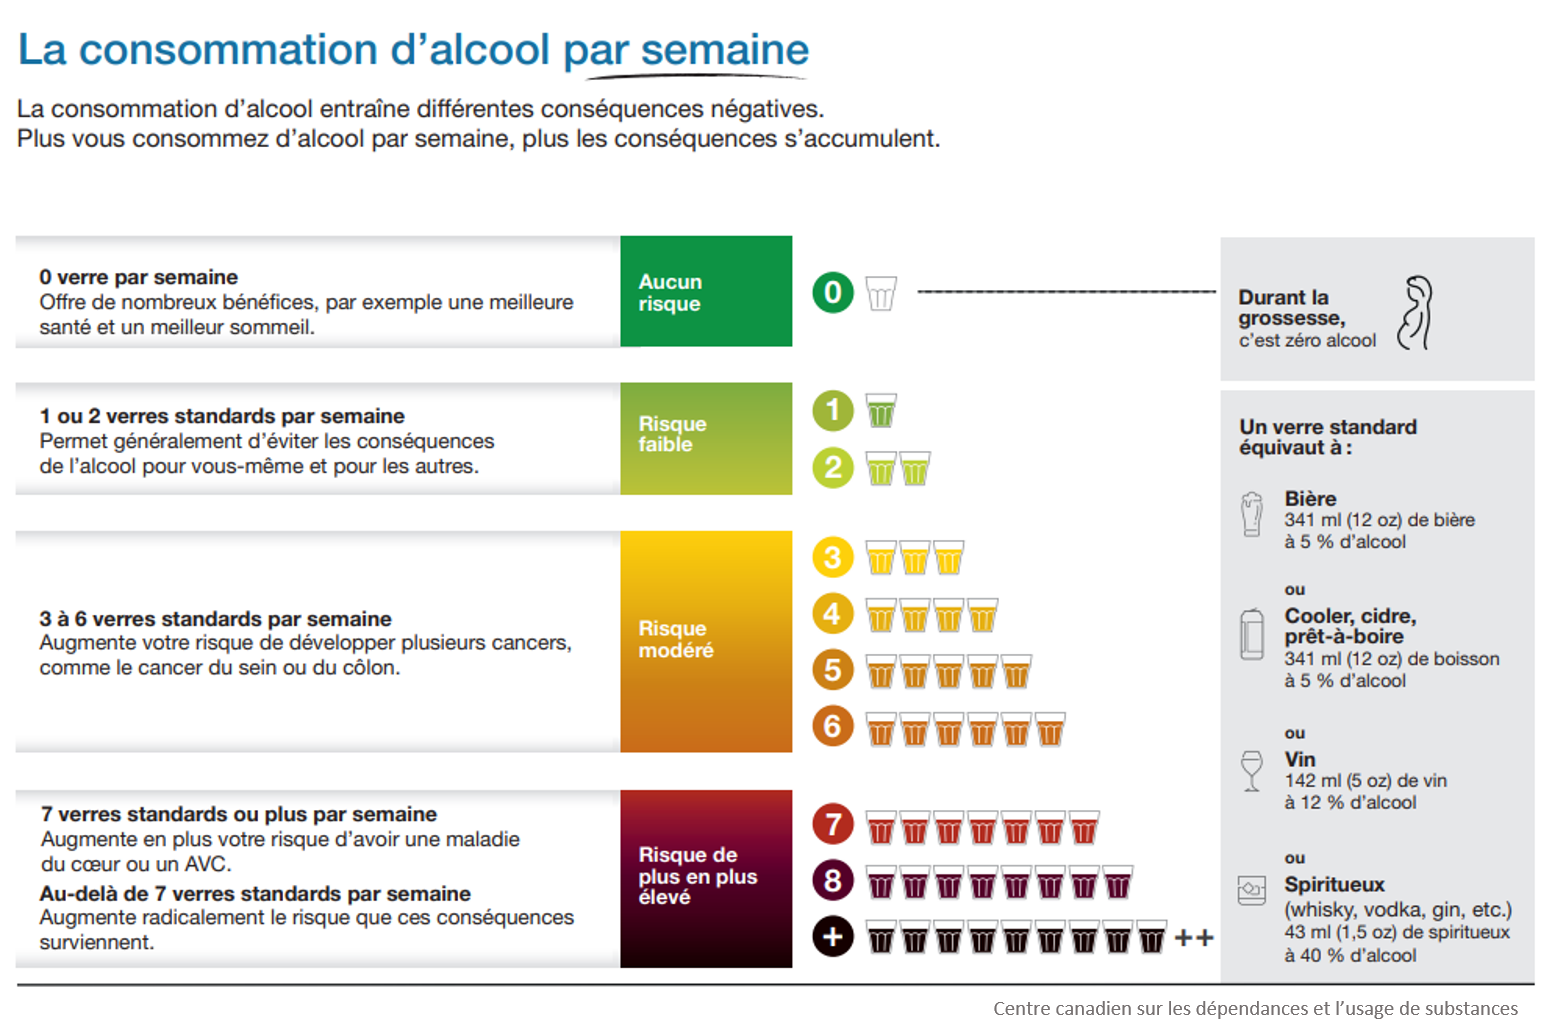 Résumé grand public des Repères canadiens sur l’alcool et la santé : boire moins, c’est mieux (infographie) (c) Centre canadien sur les dépendances et l’usage de substances